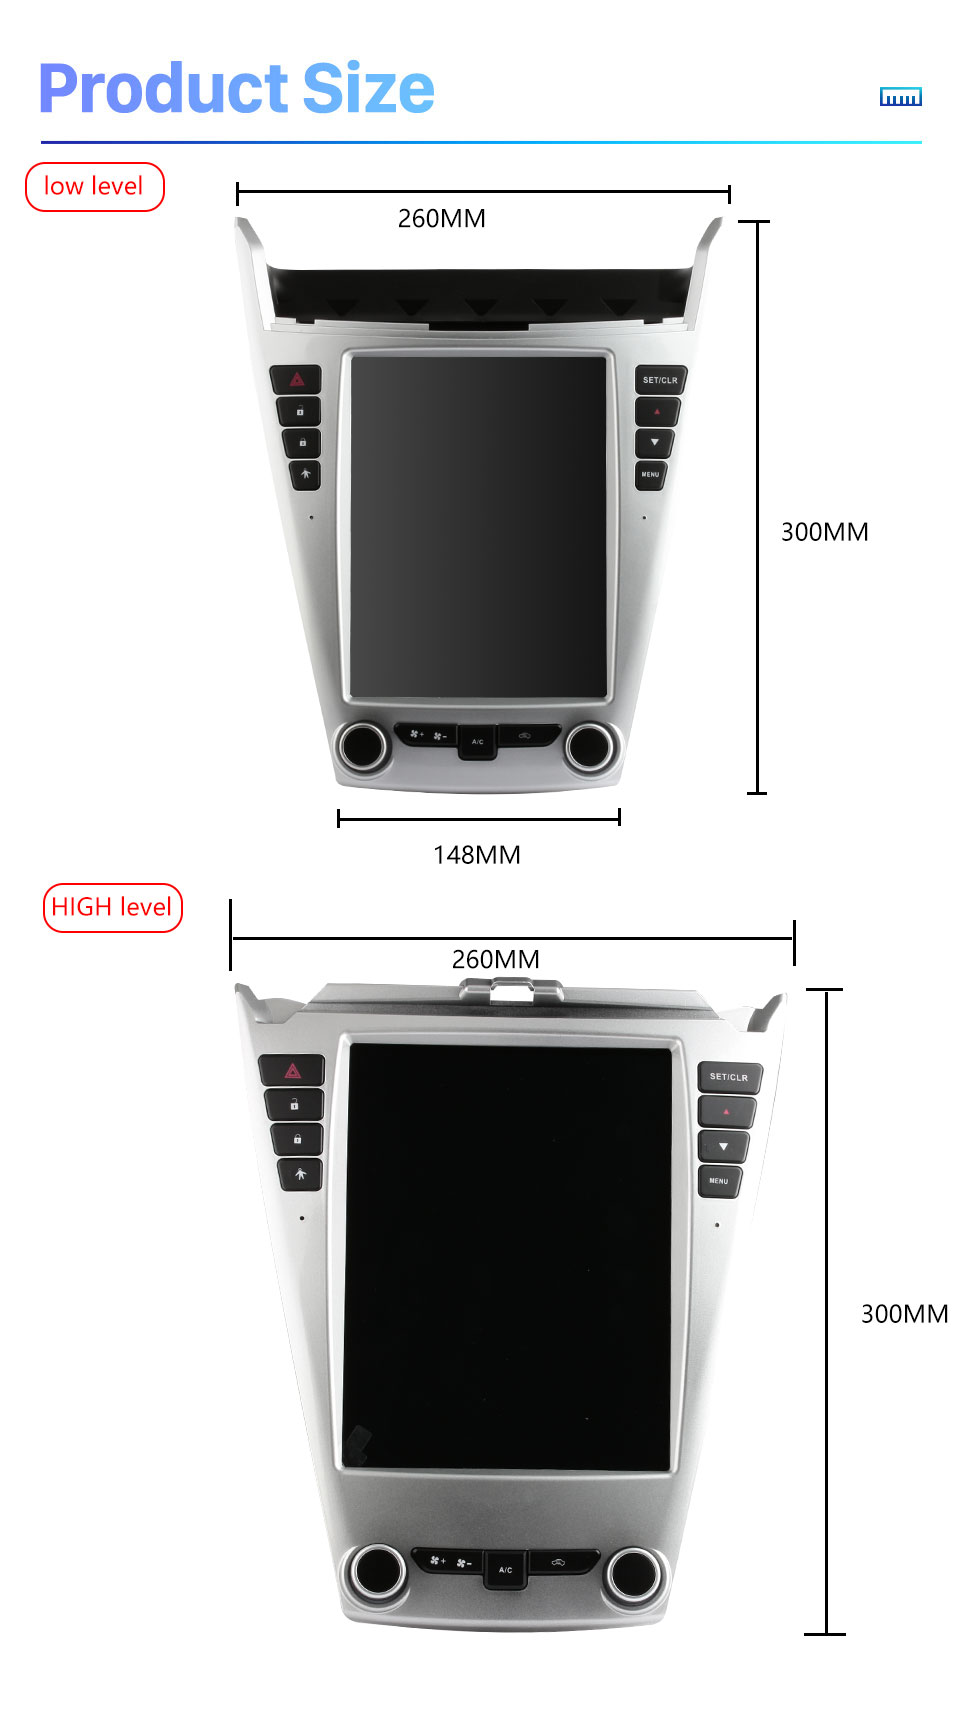 Seicane OEM 9,7 pouces Android 10.0 pour 2010 2011 2012-2017 Chevy Chevrolet Equinox Radio Système de navigation GPS avec écran tactile HD Prise en charge Bluetooth Carplay OBD2 DVR TPMS